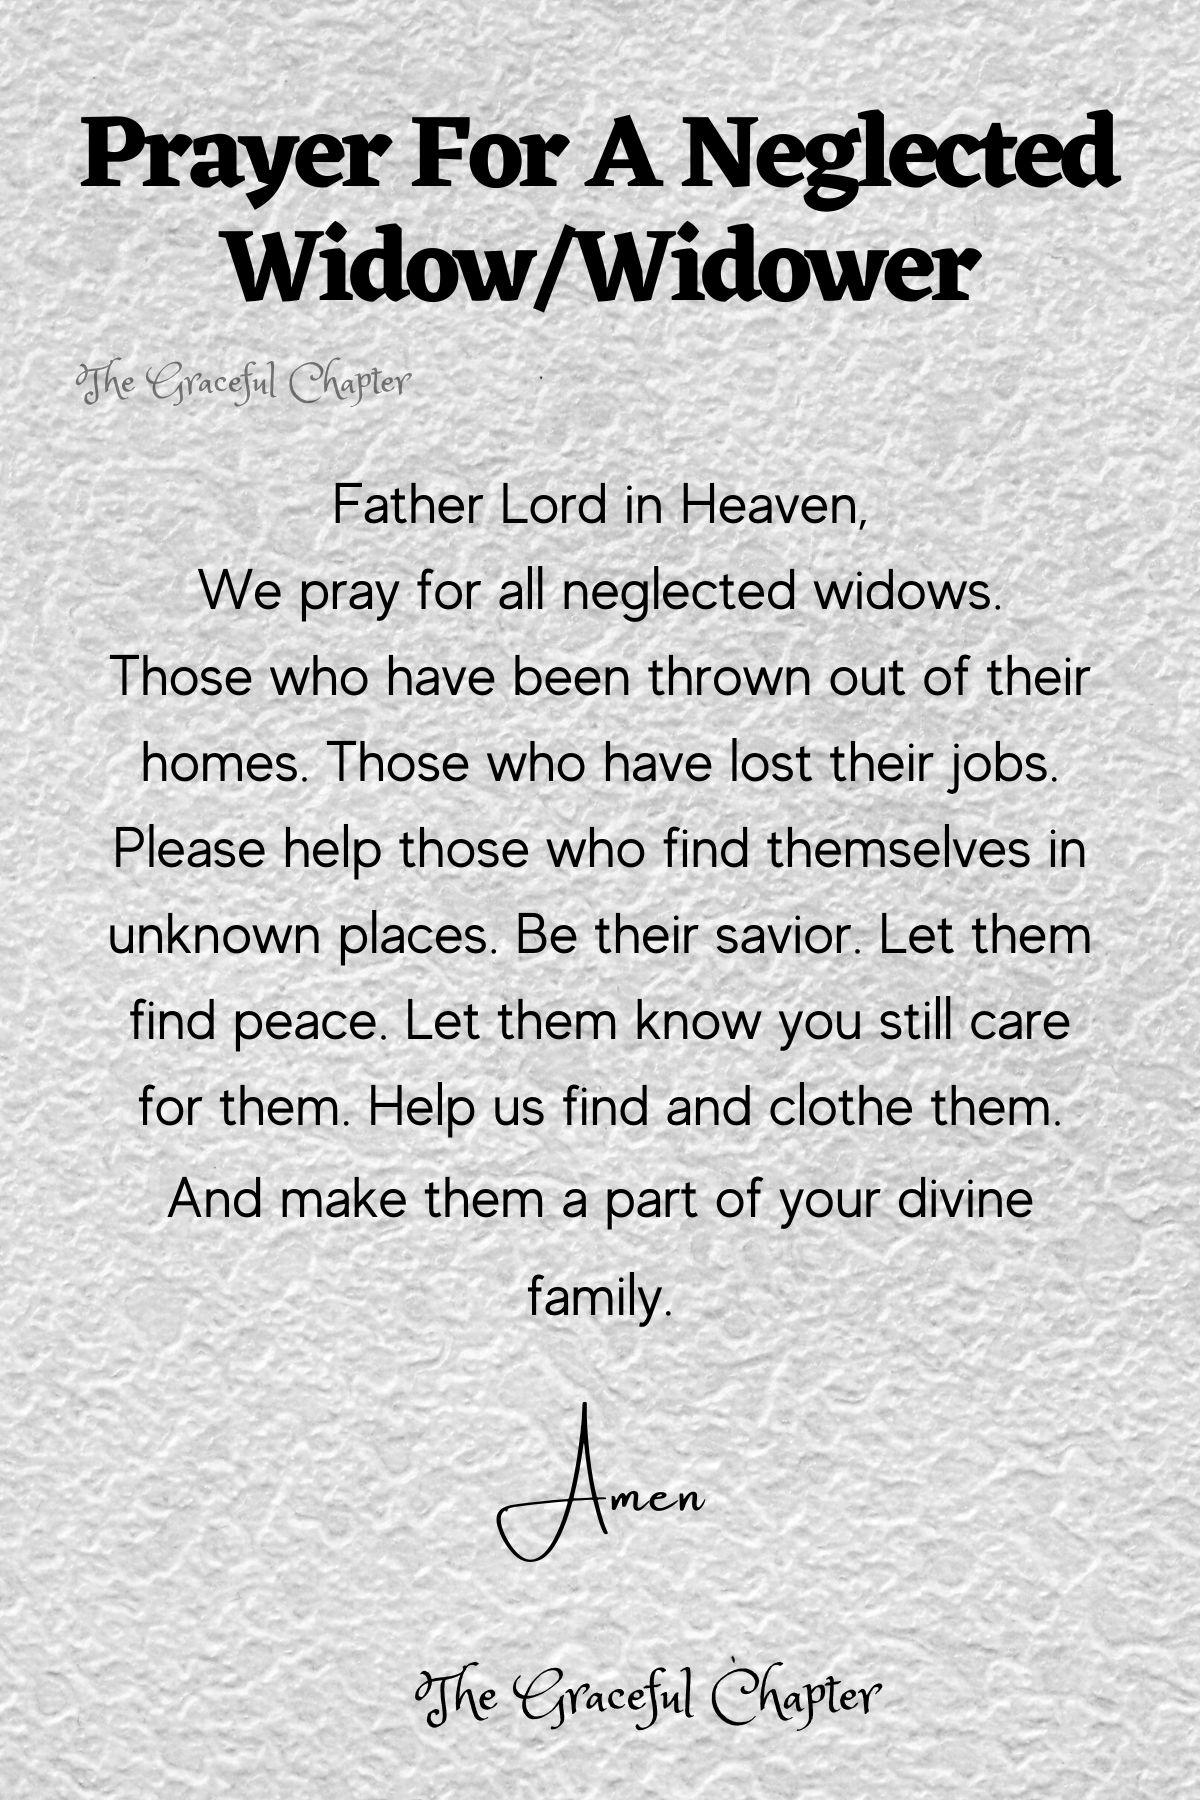 Prayer for a neglected widow/widower